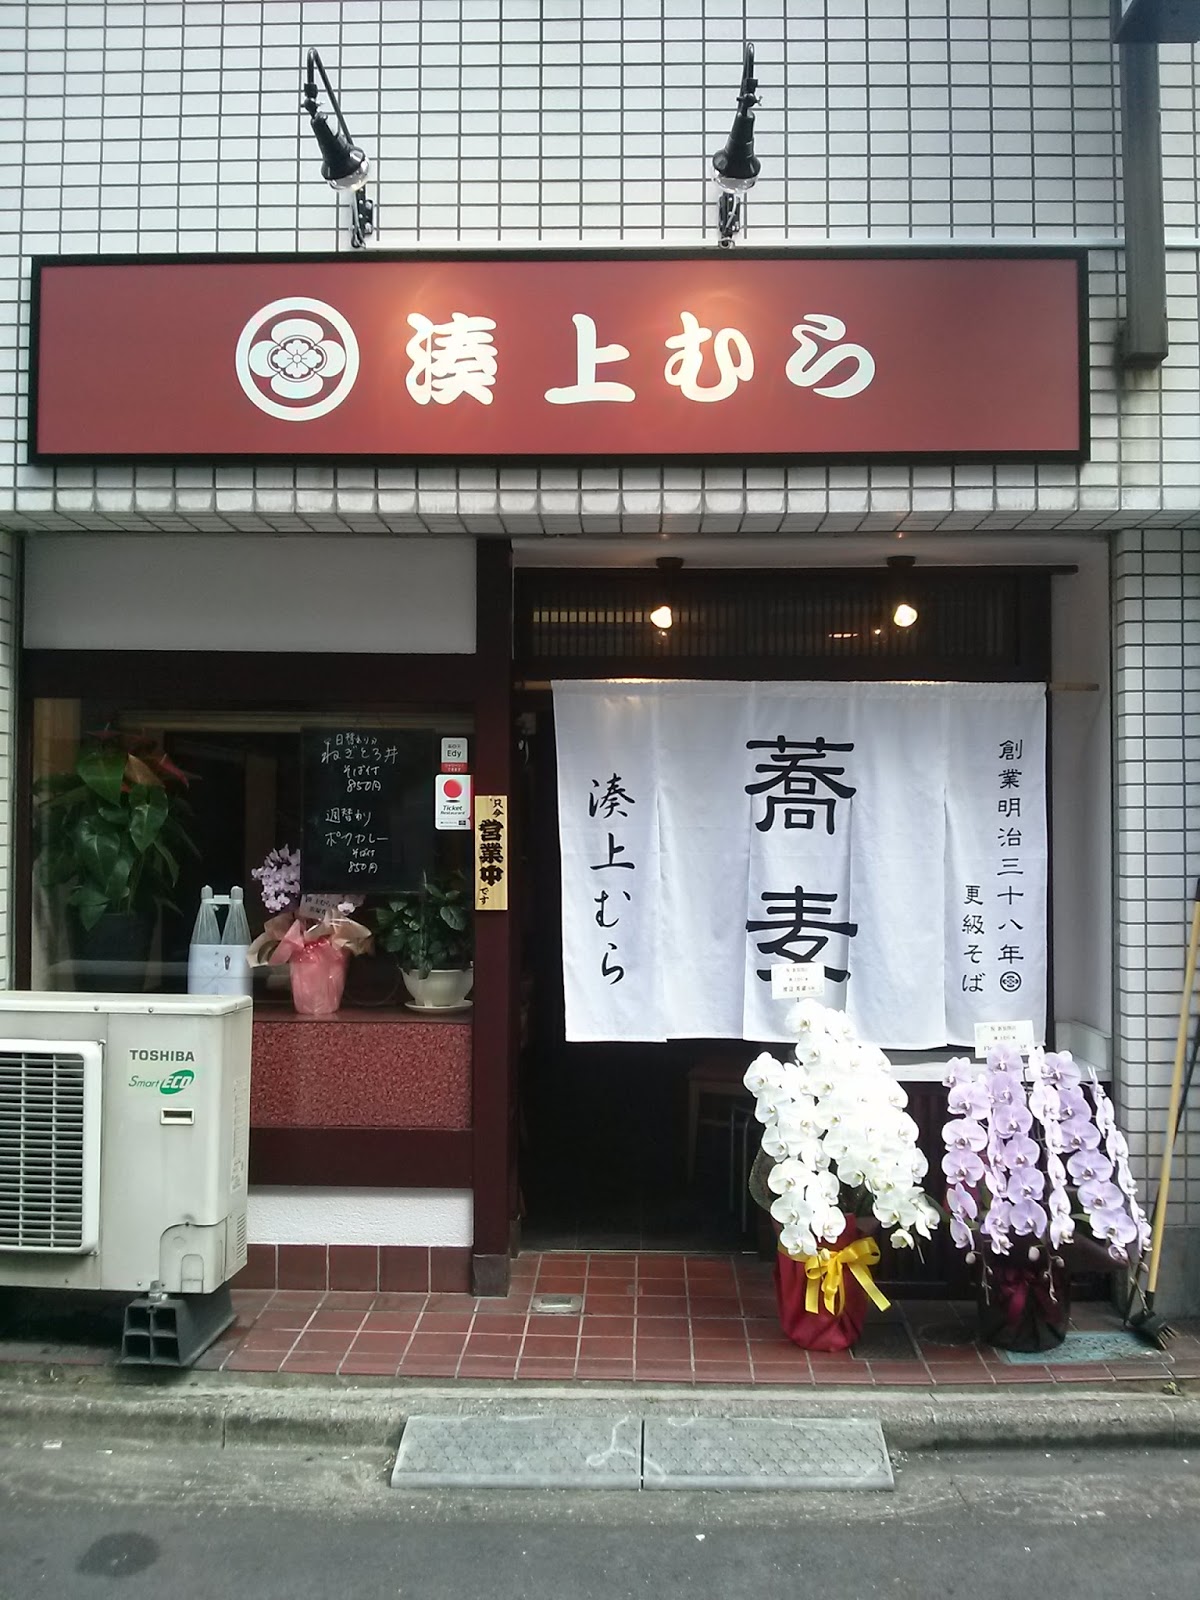 上村そば店1.2F蕎麦居酒屋の風景